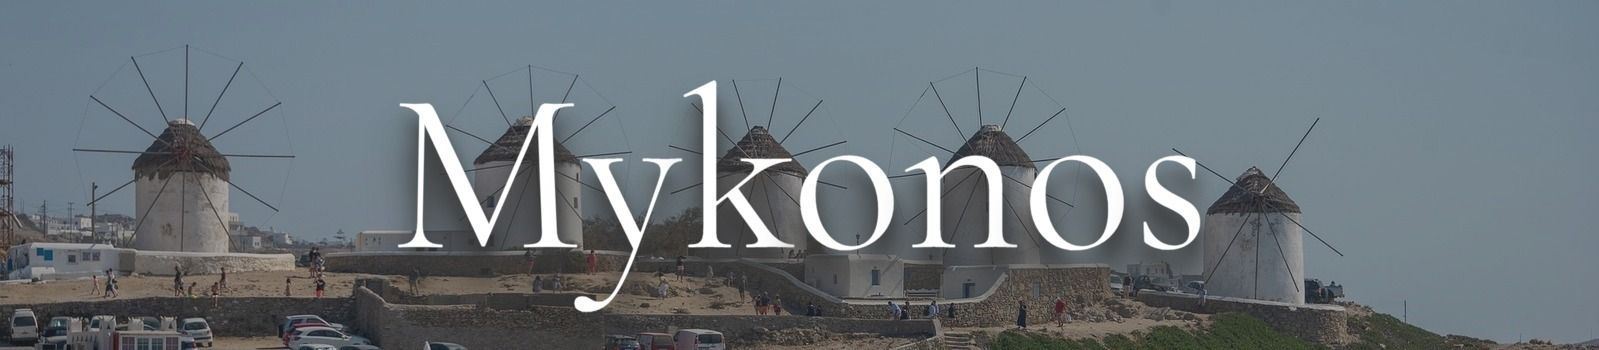 Mykonos Banner